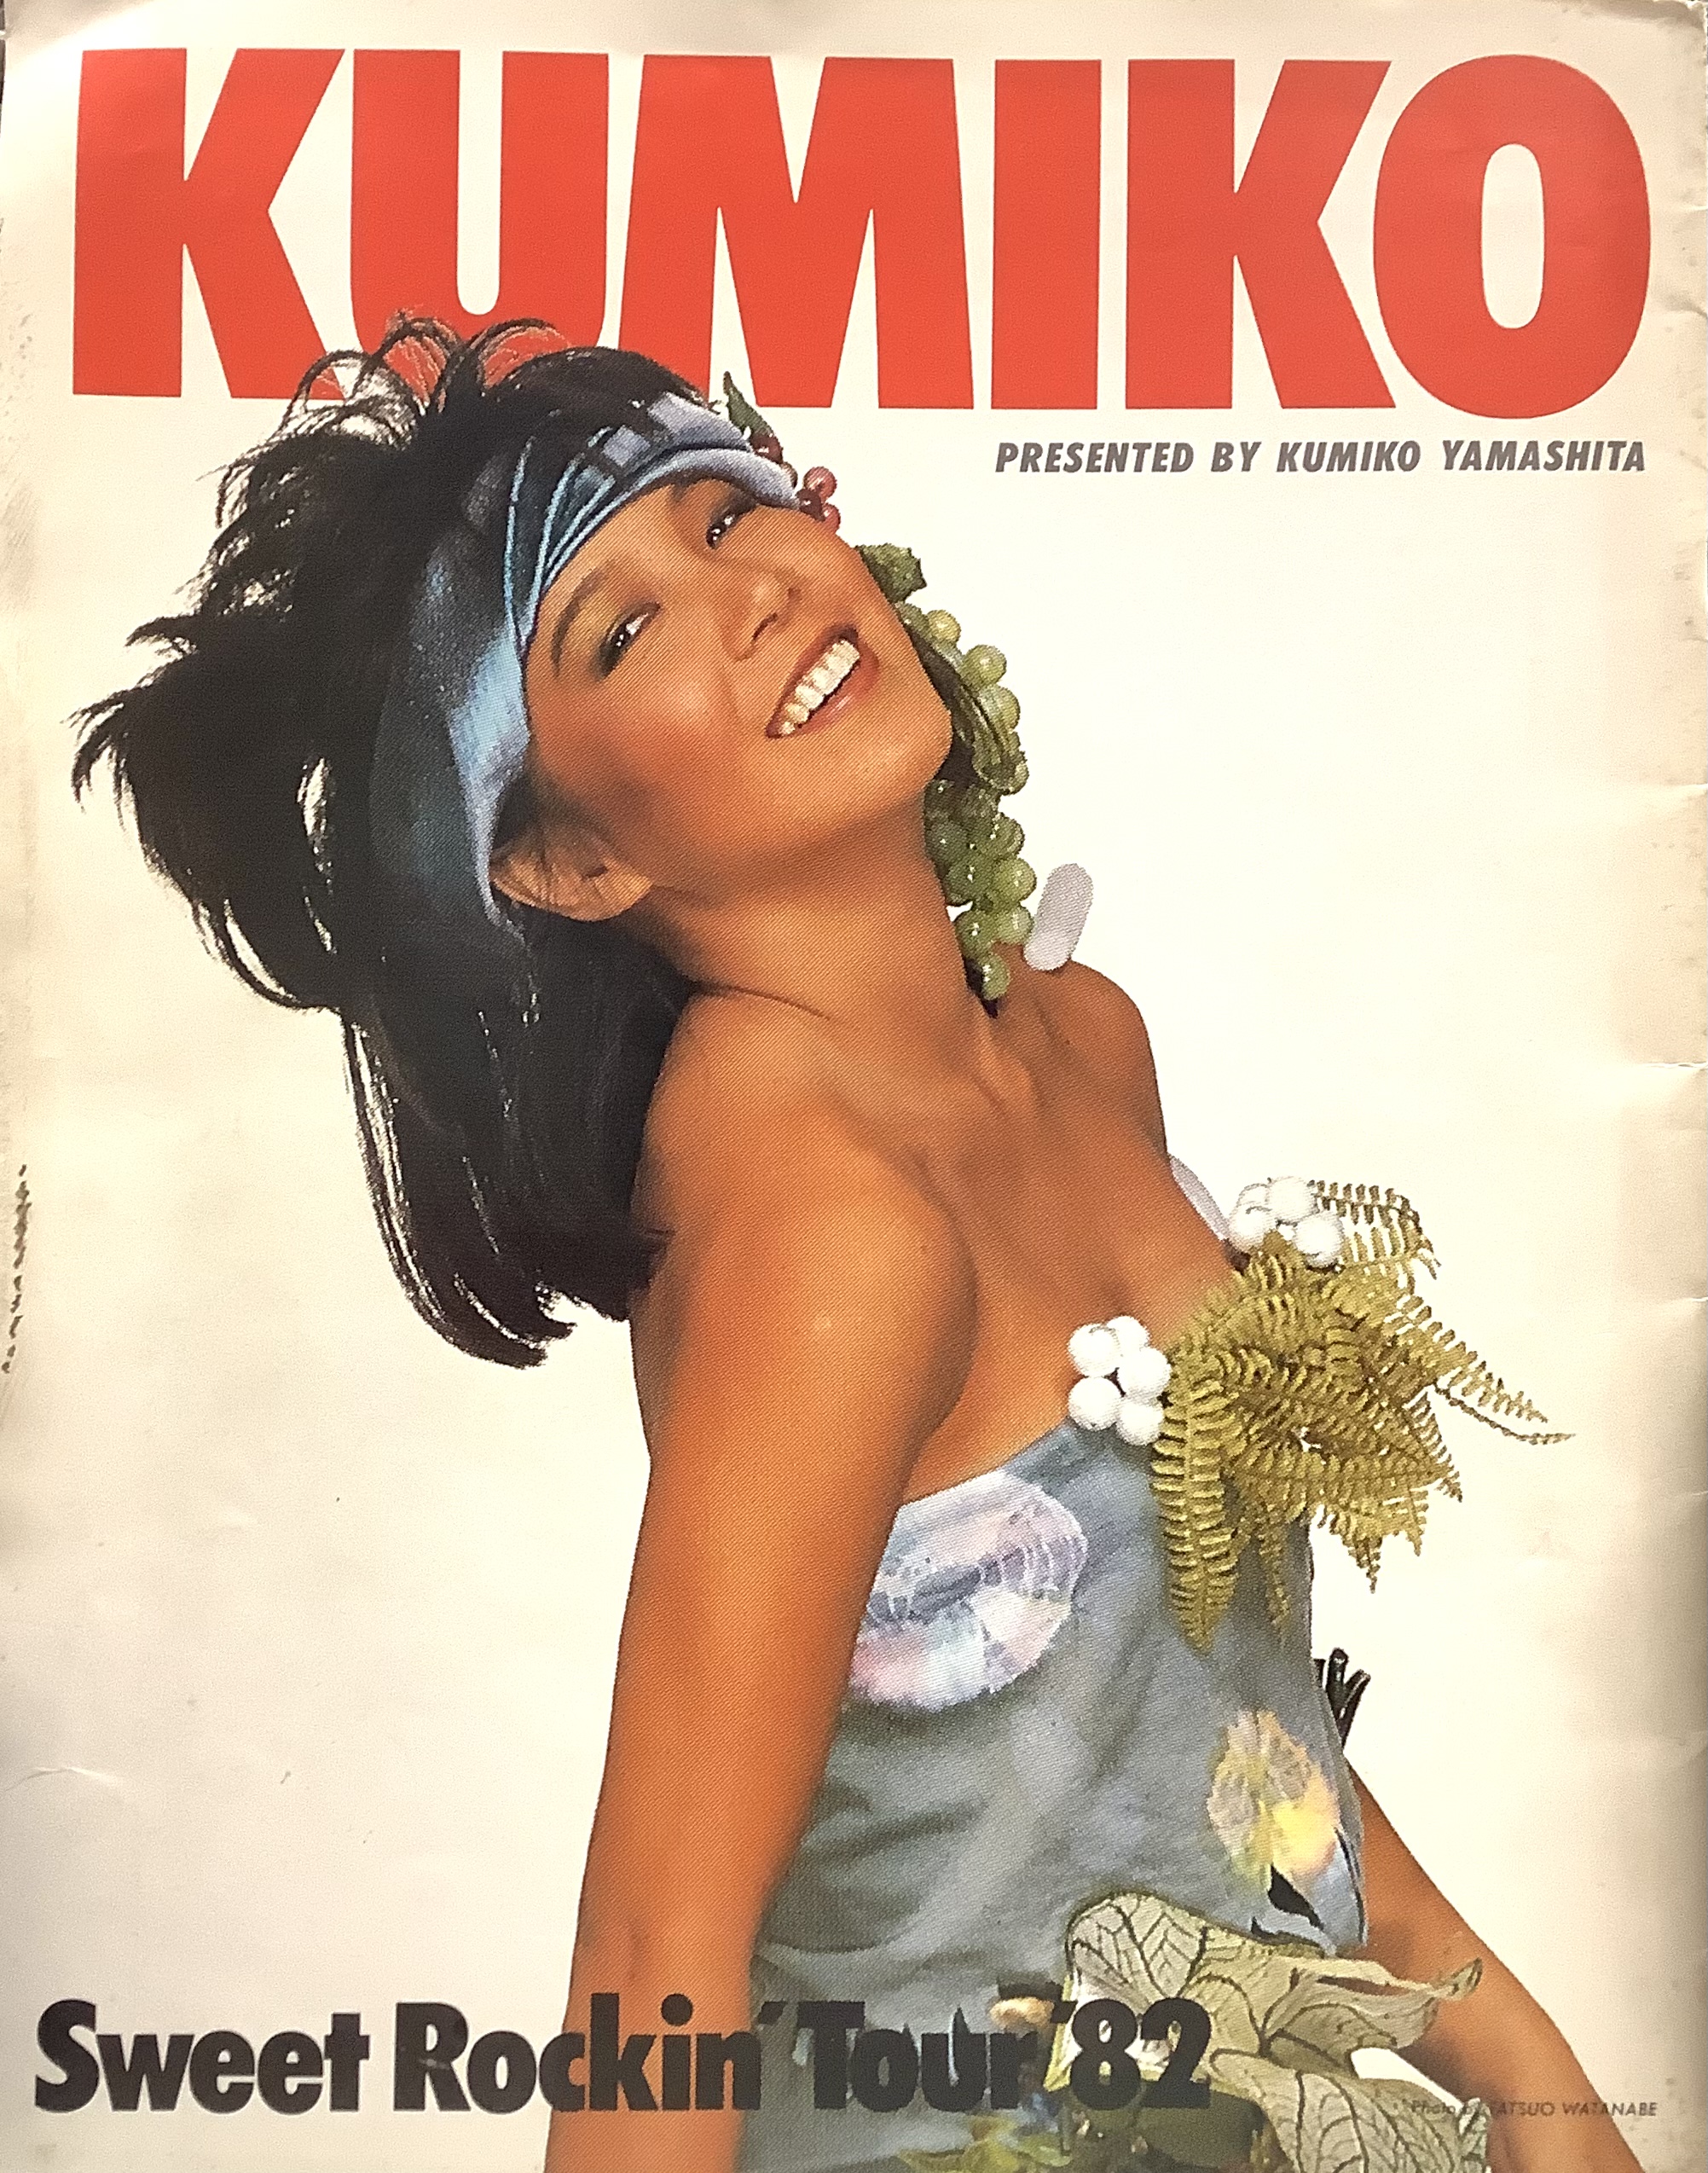 山下久美子 1982年コンサートパンフレット『KUMIKO Sweet Rockin' Tour 